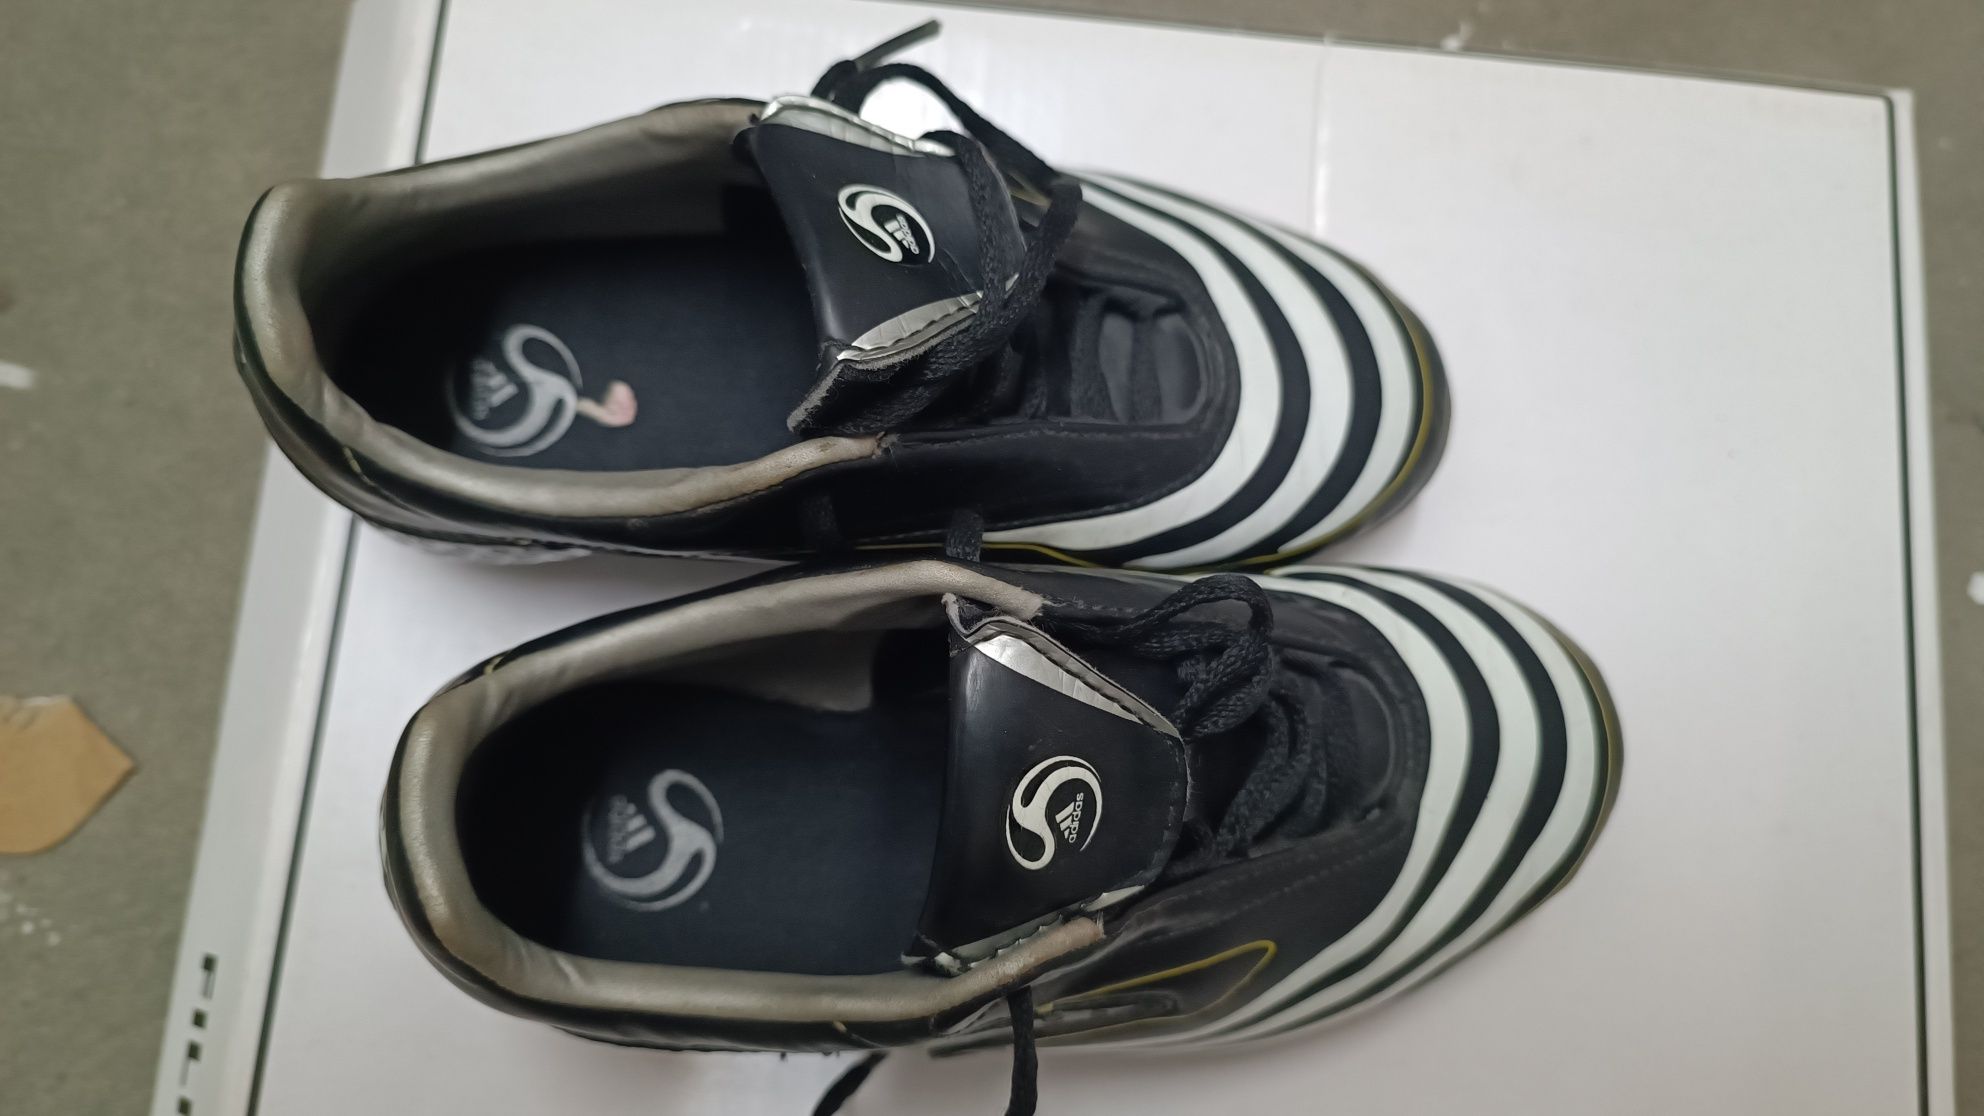 Buty piłkarskie korki Adidas F10 dziecięce rozmiar 29